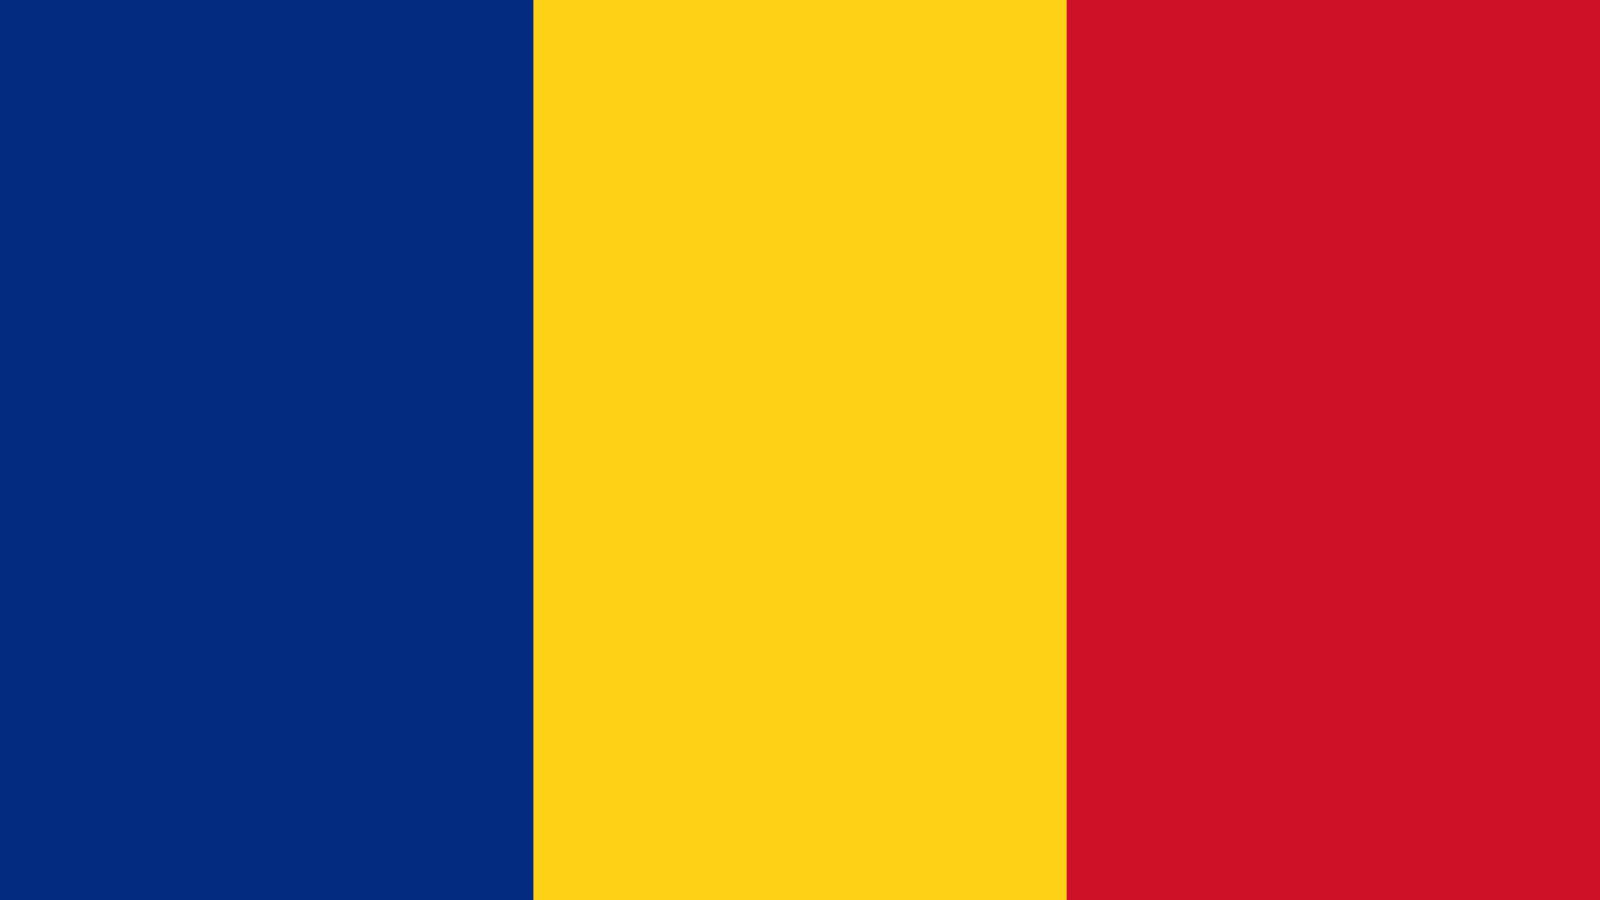 Le président de la Roumanie met en quarantaine le covid-19